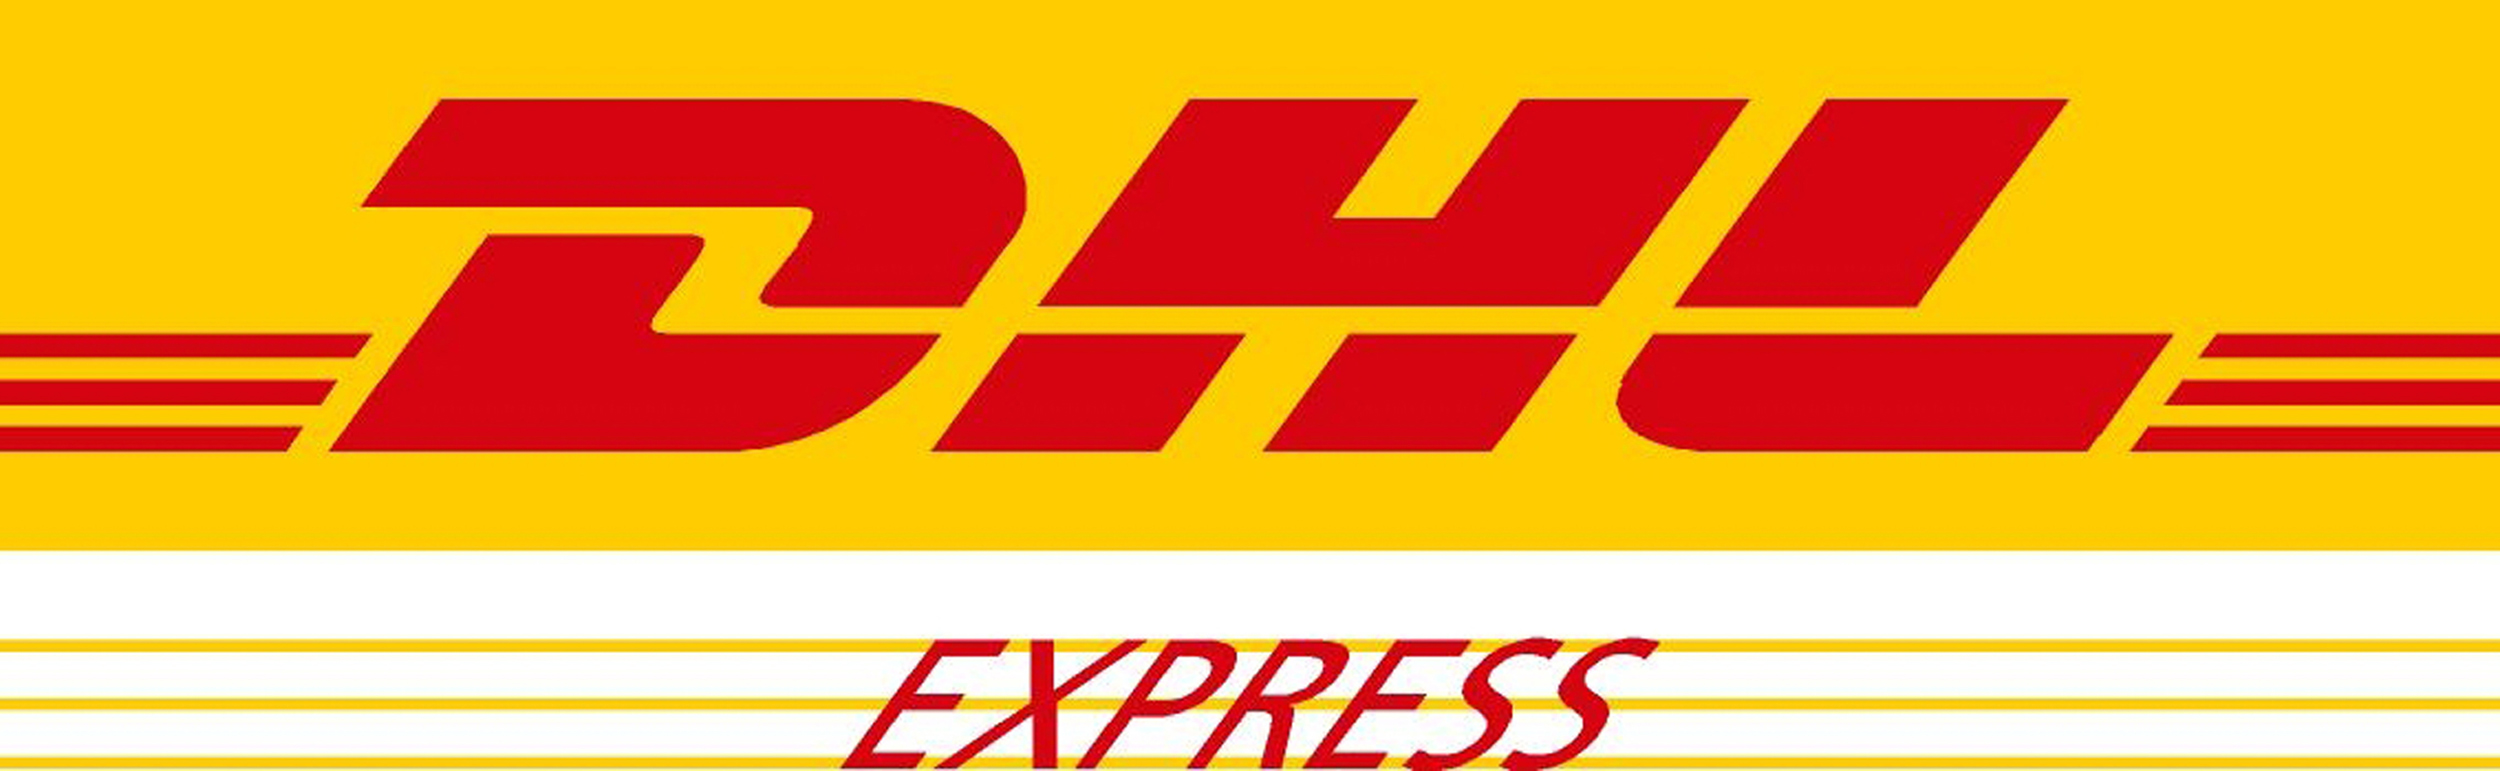 Společnost DHL Express - nový přepravní partner projektu